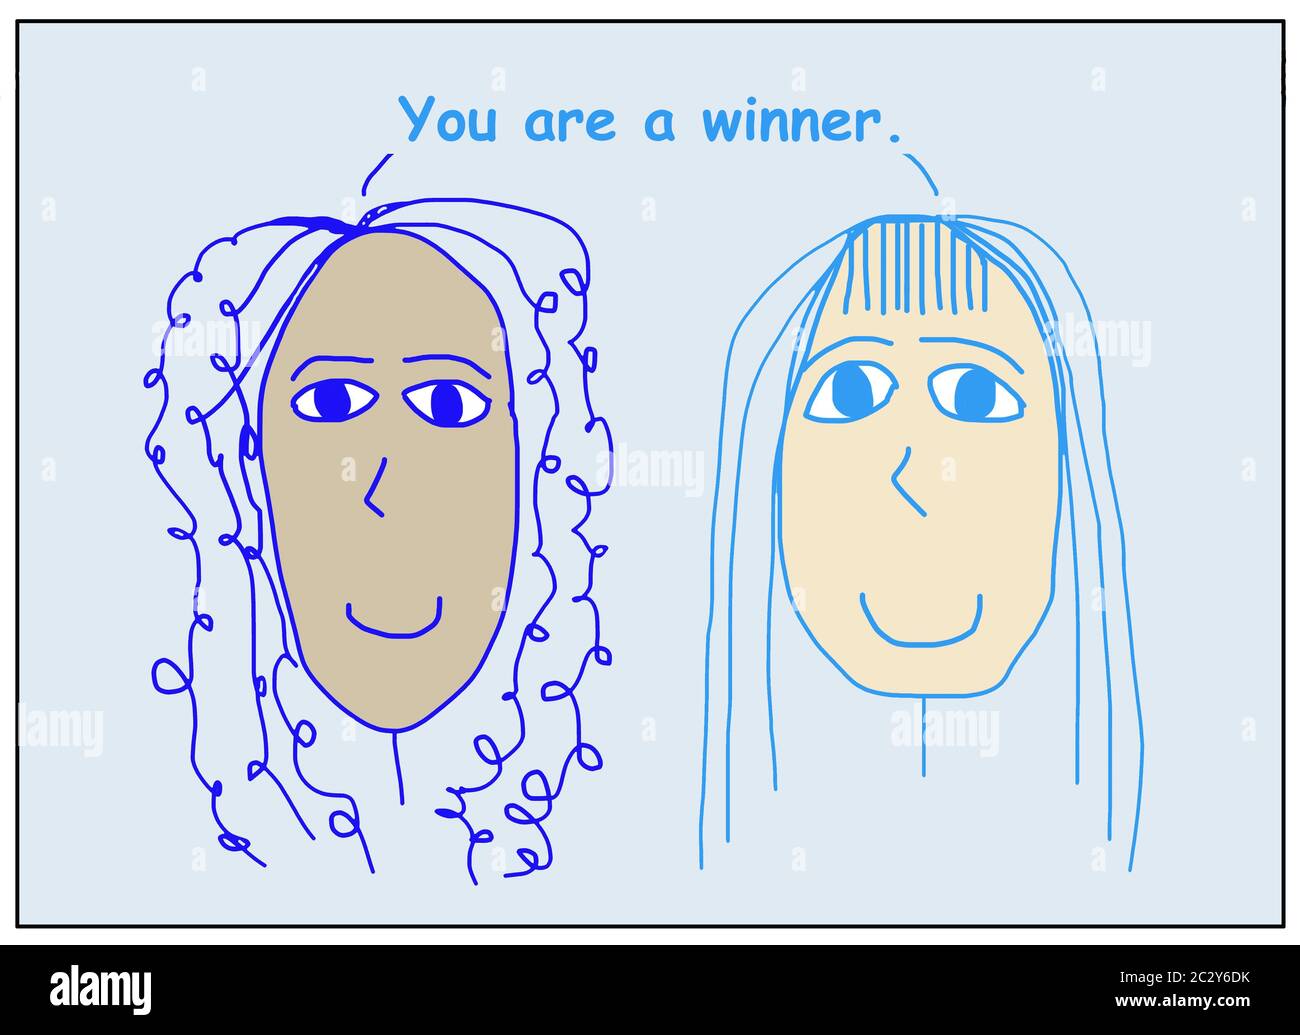 Farbe Cartoon von zwei lächelnden, schönen und ethnisch verschiedenen Frauen, die Sie ein Gewinner sind. Stockfoto